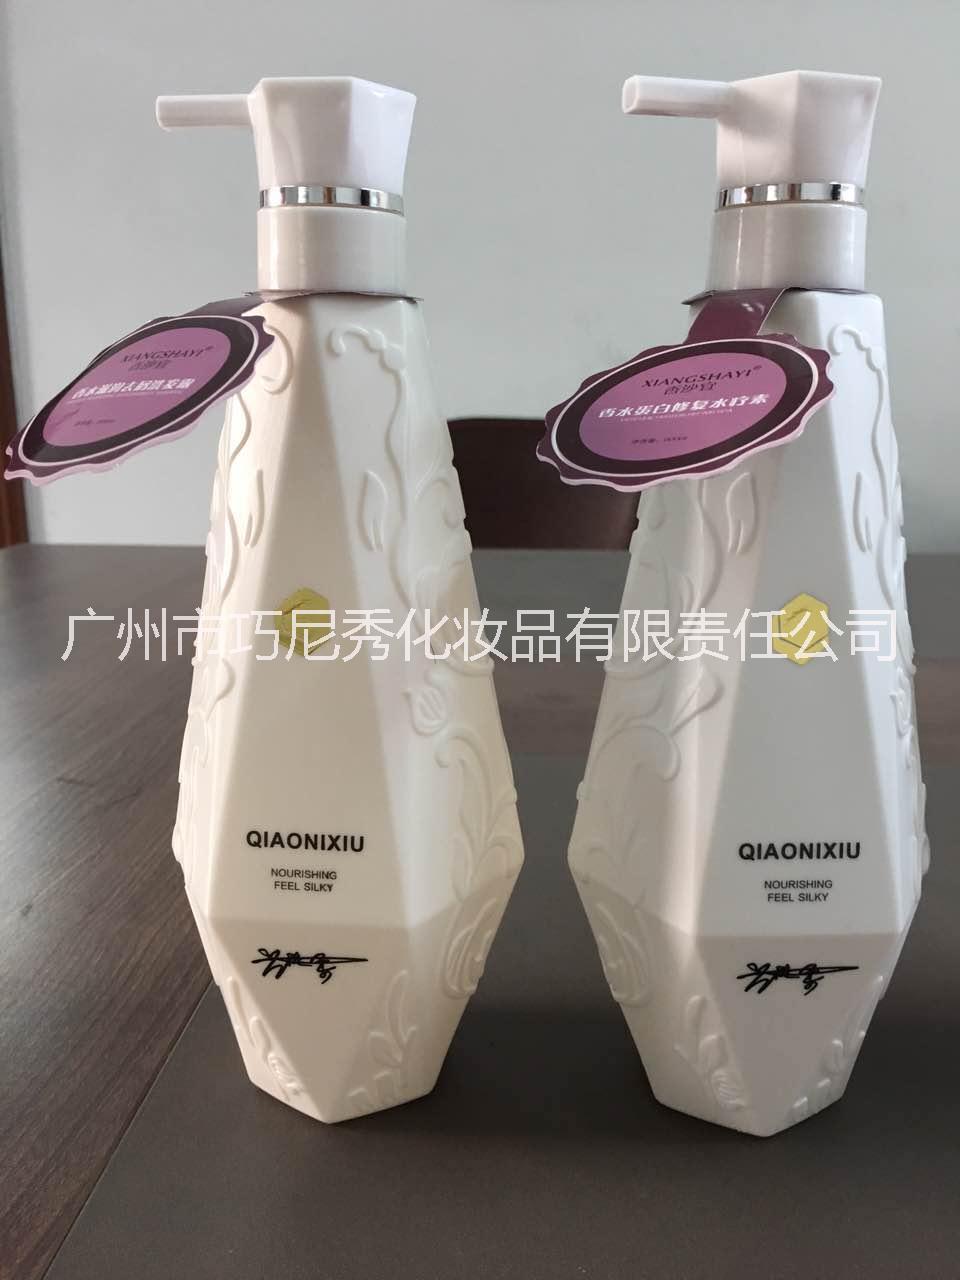 广州巧尼秀化妆品有限公司供应香沙宜香水蛋白修复水疗素800ml